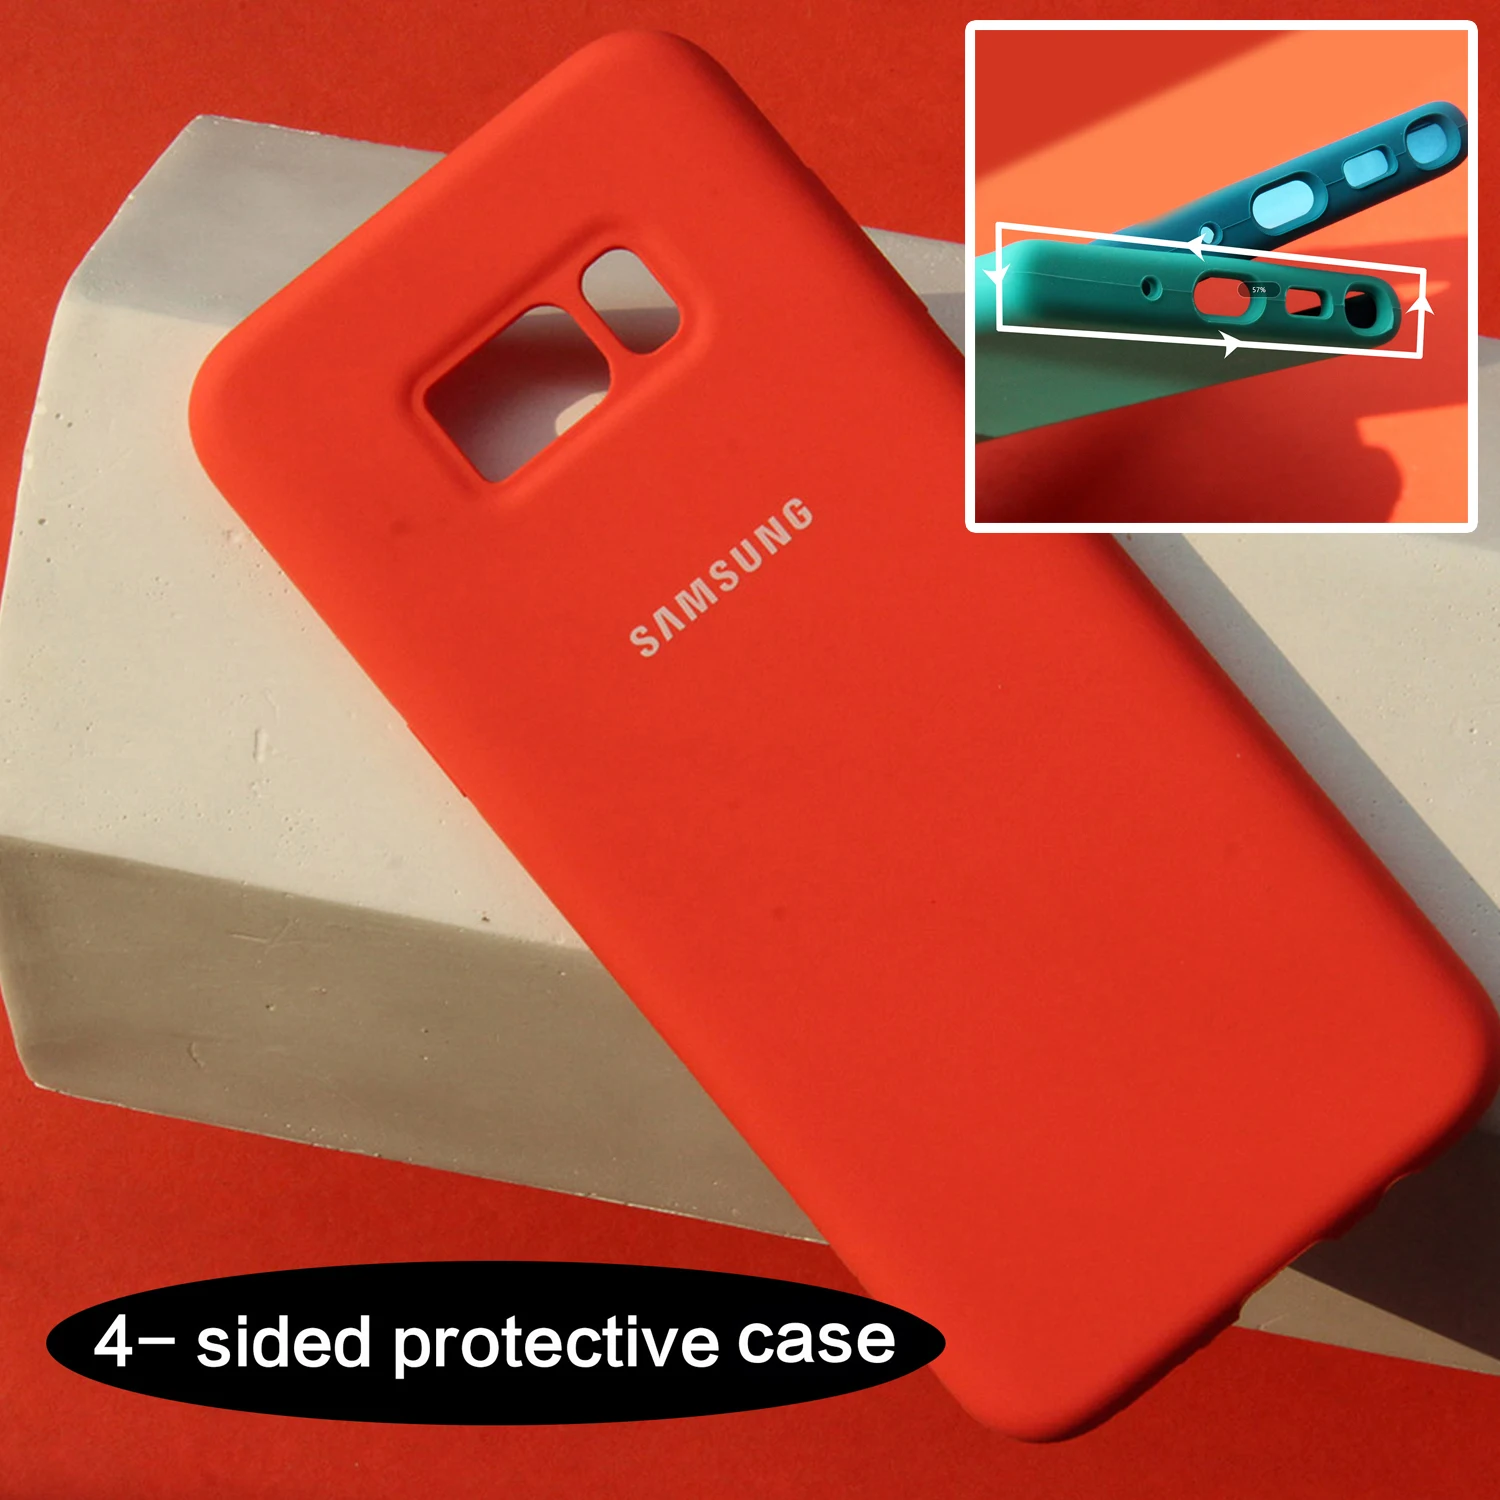 samsung Galaxy S8/S8 Plus жидкий силиконовый чехол шелковистый мягкий на ощупь защитный чехол для samsung s8 - Цвет: Orange